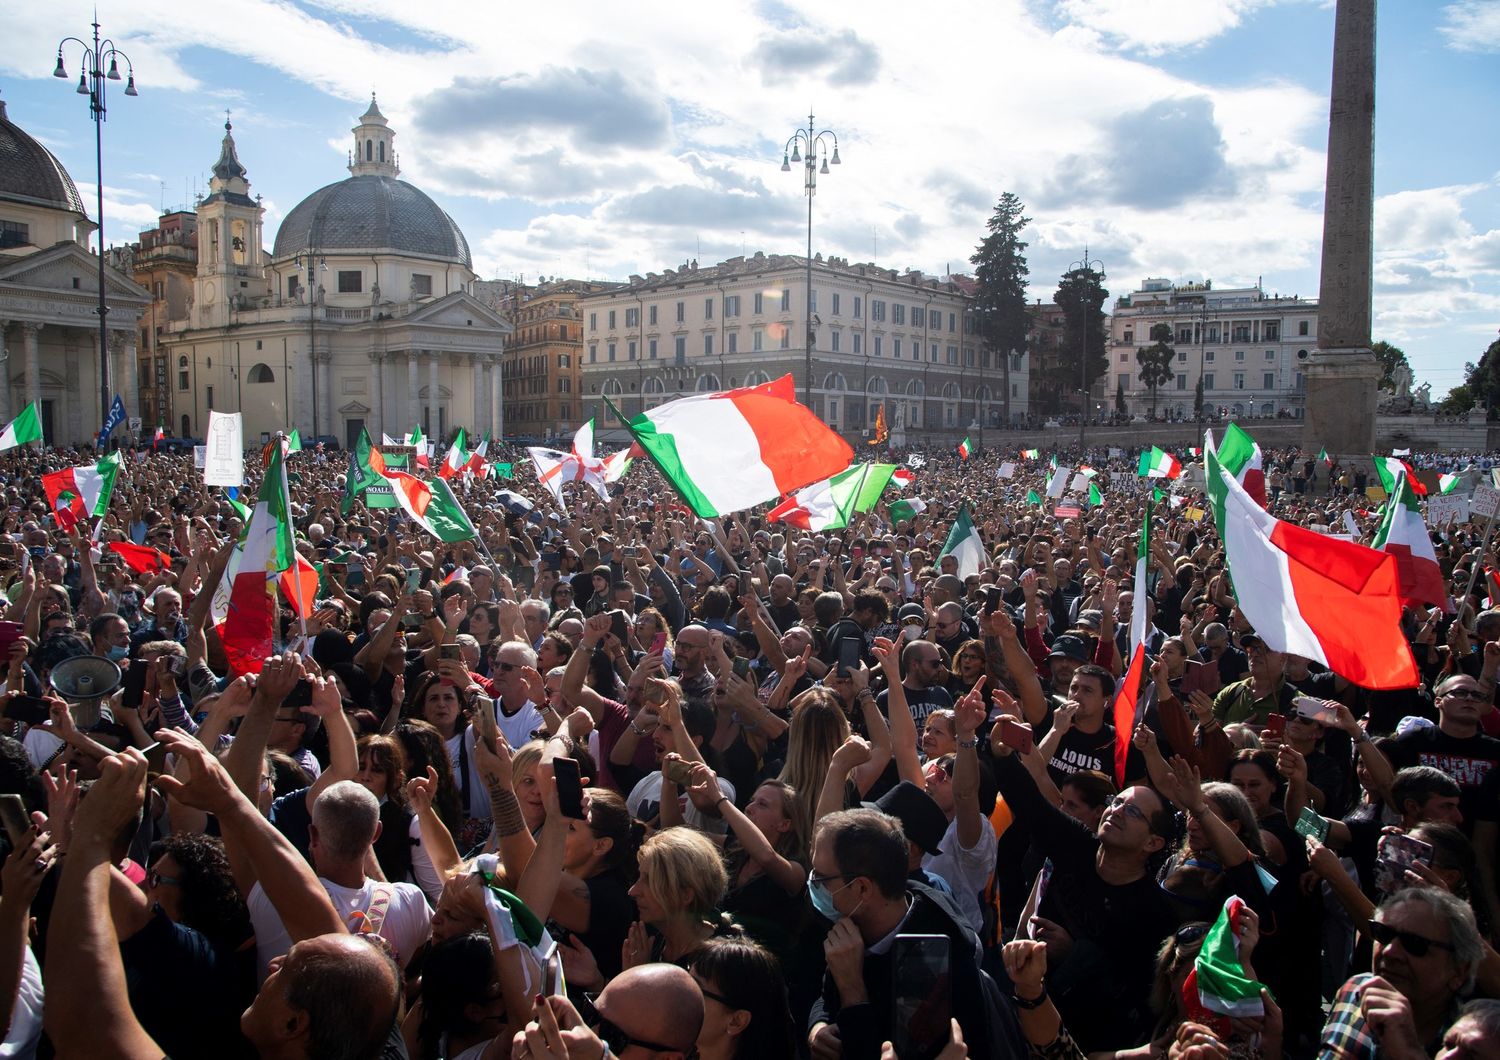 La manifestazione di sabato pomeriggio contro il Green pass a piazza del Popolo a Roma&nbsp;